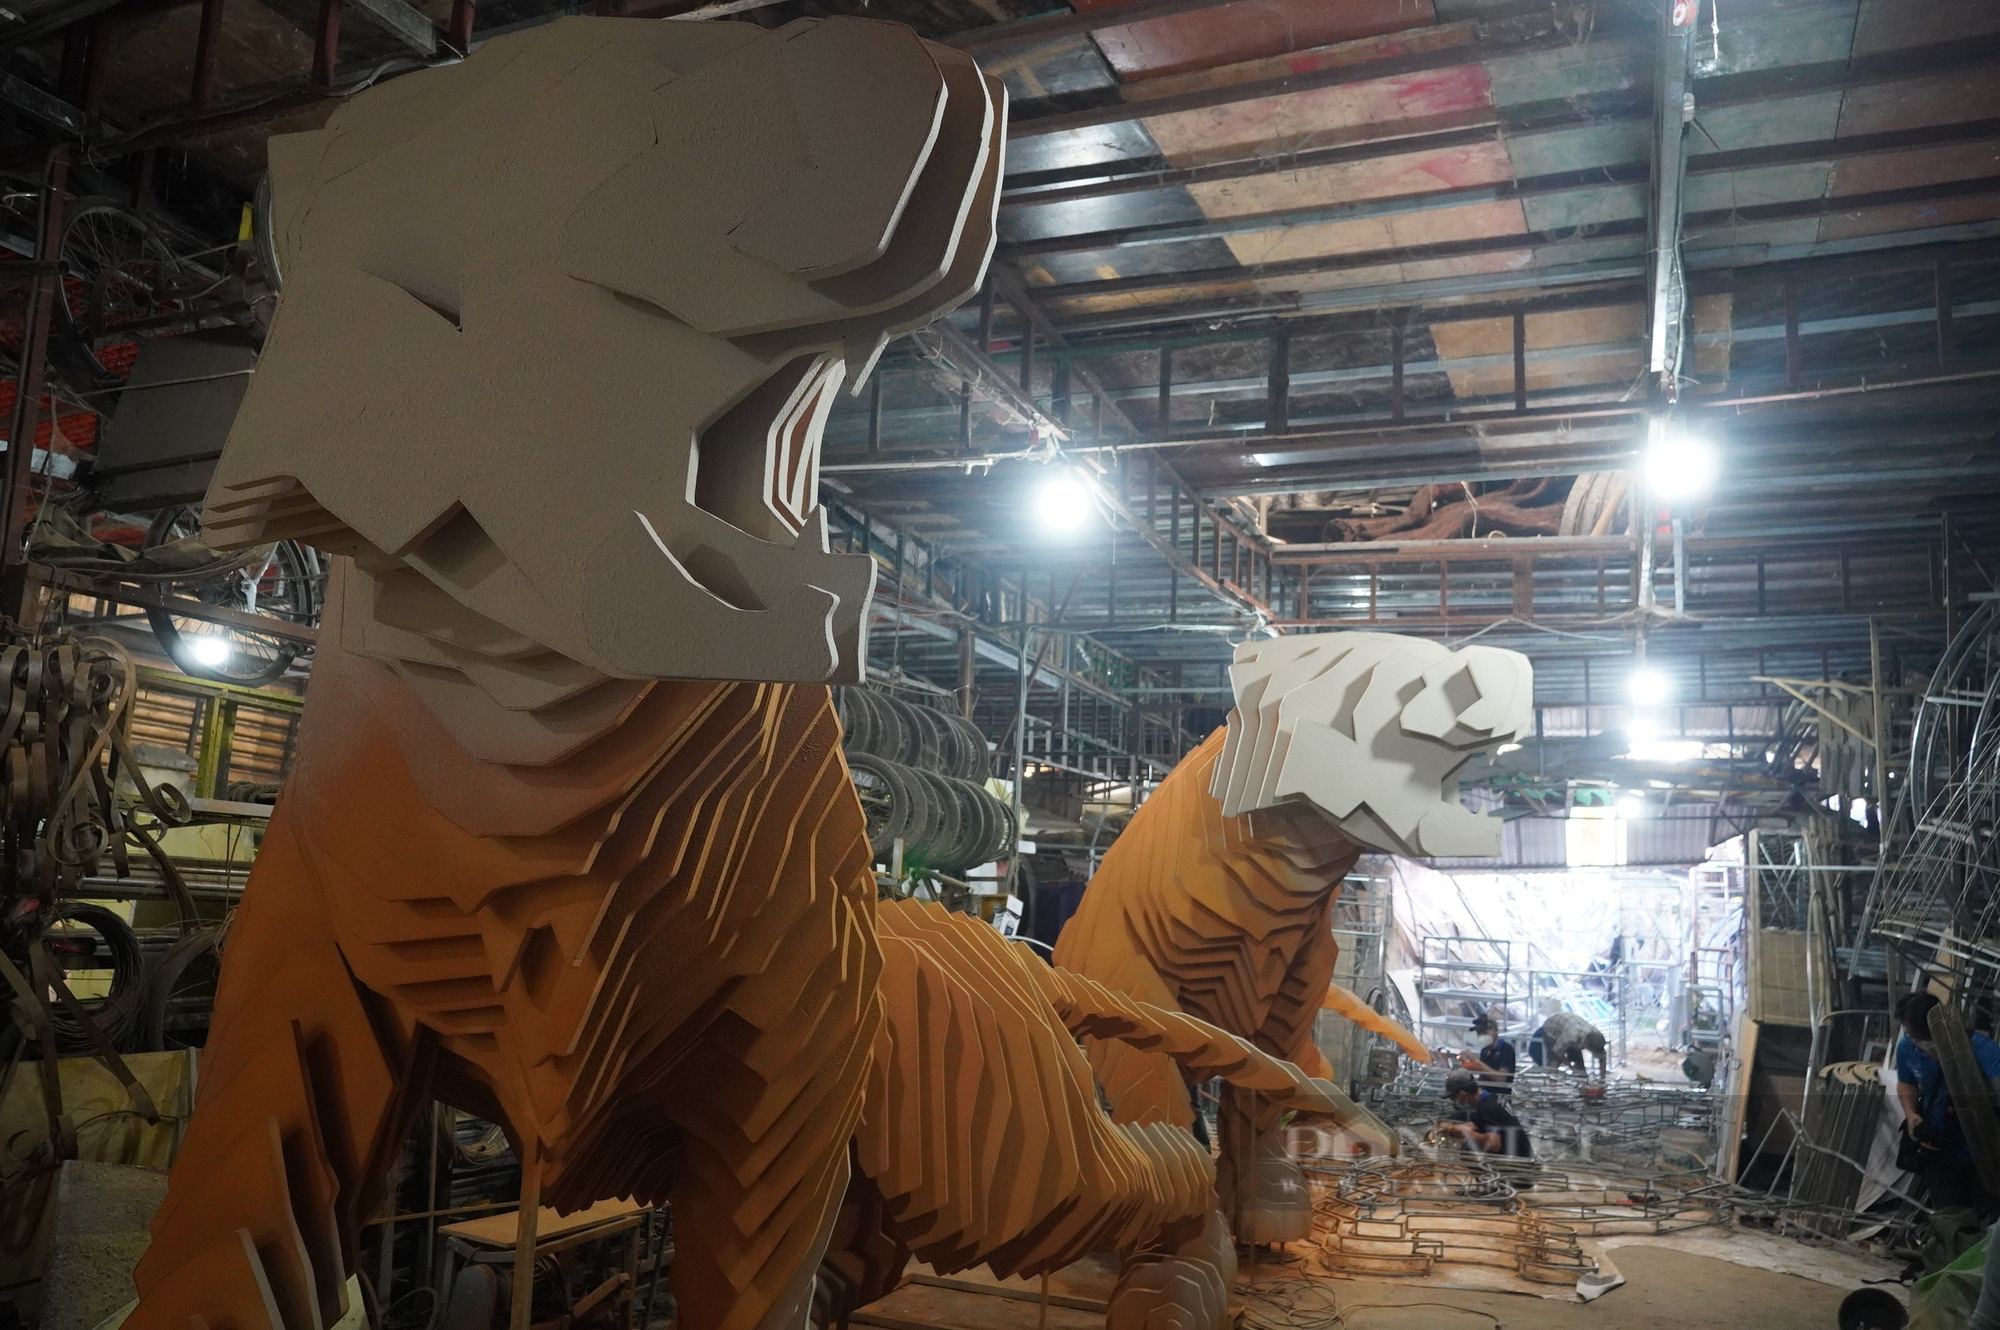 Cặp hổ cao 3m, dài 7m chuẩn bị hoàn thiện trưng diện tại cổng chào đường hoa Nguyễn Huệ TP.HCM - Ảnh 1.